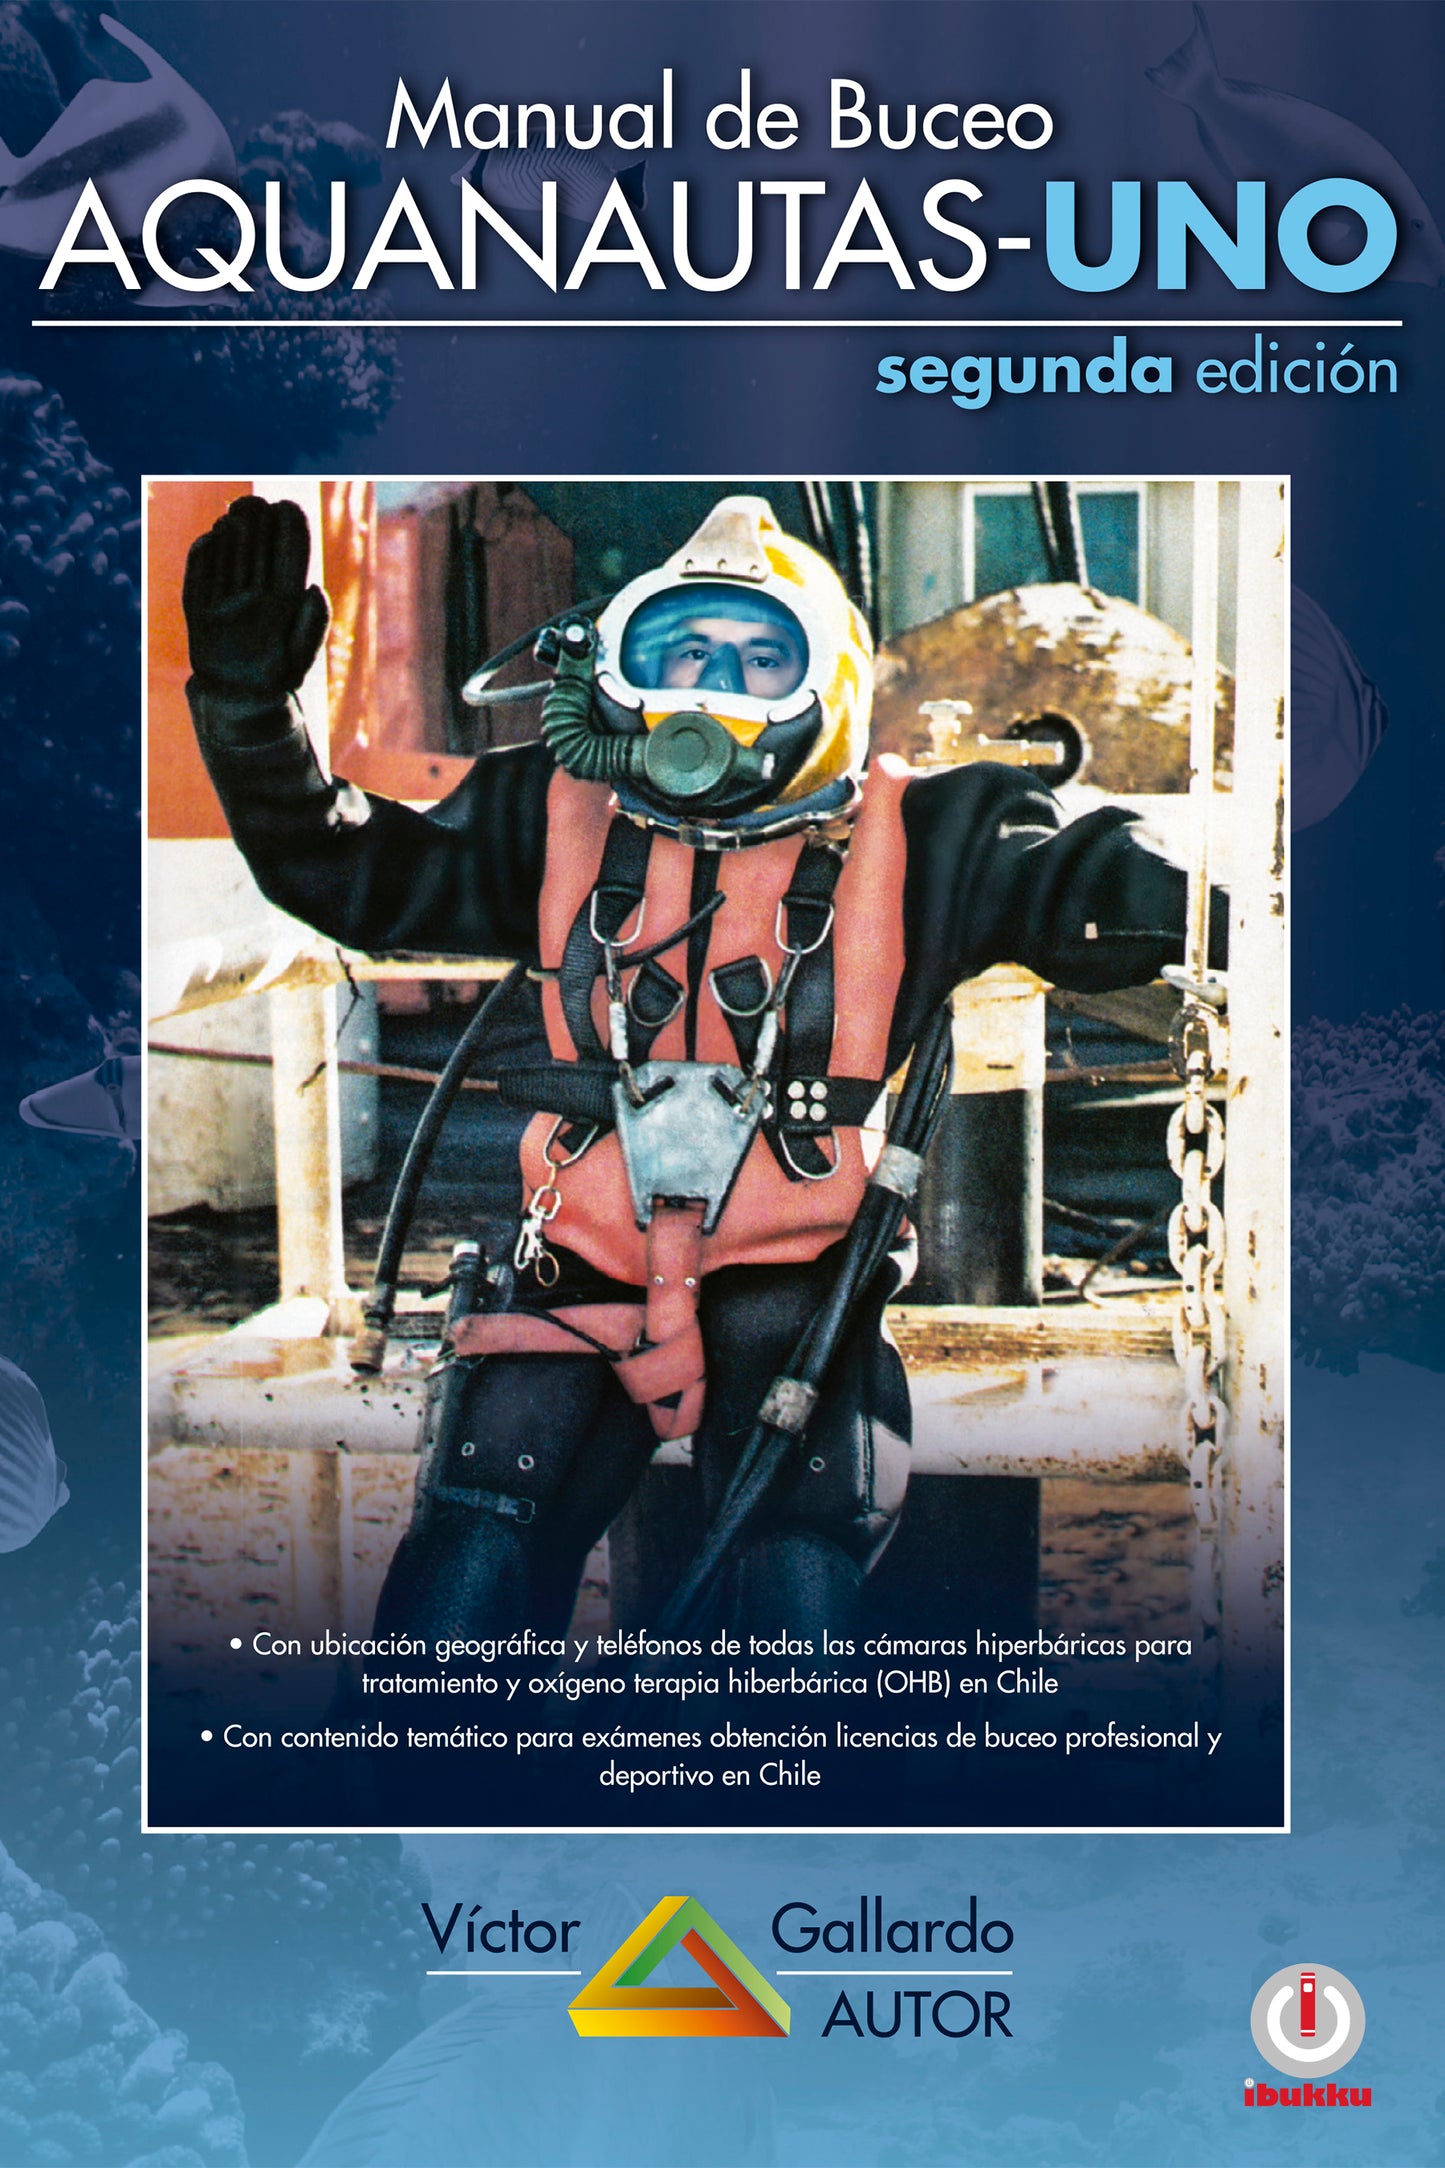 Manual de buceo: Aquanautas-Uno (Segunda edición)